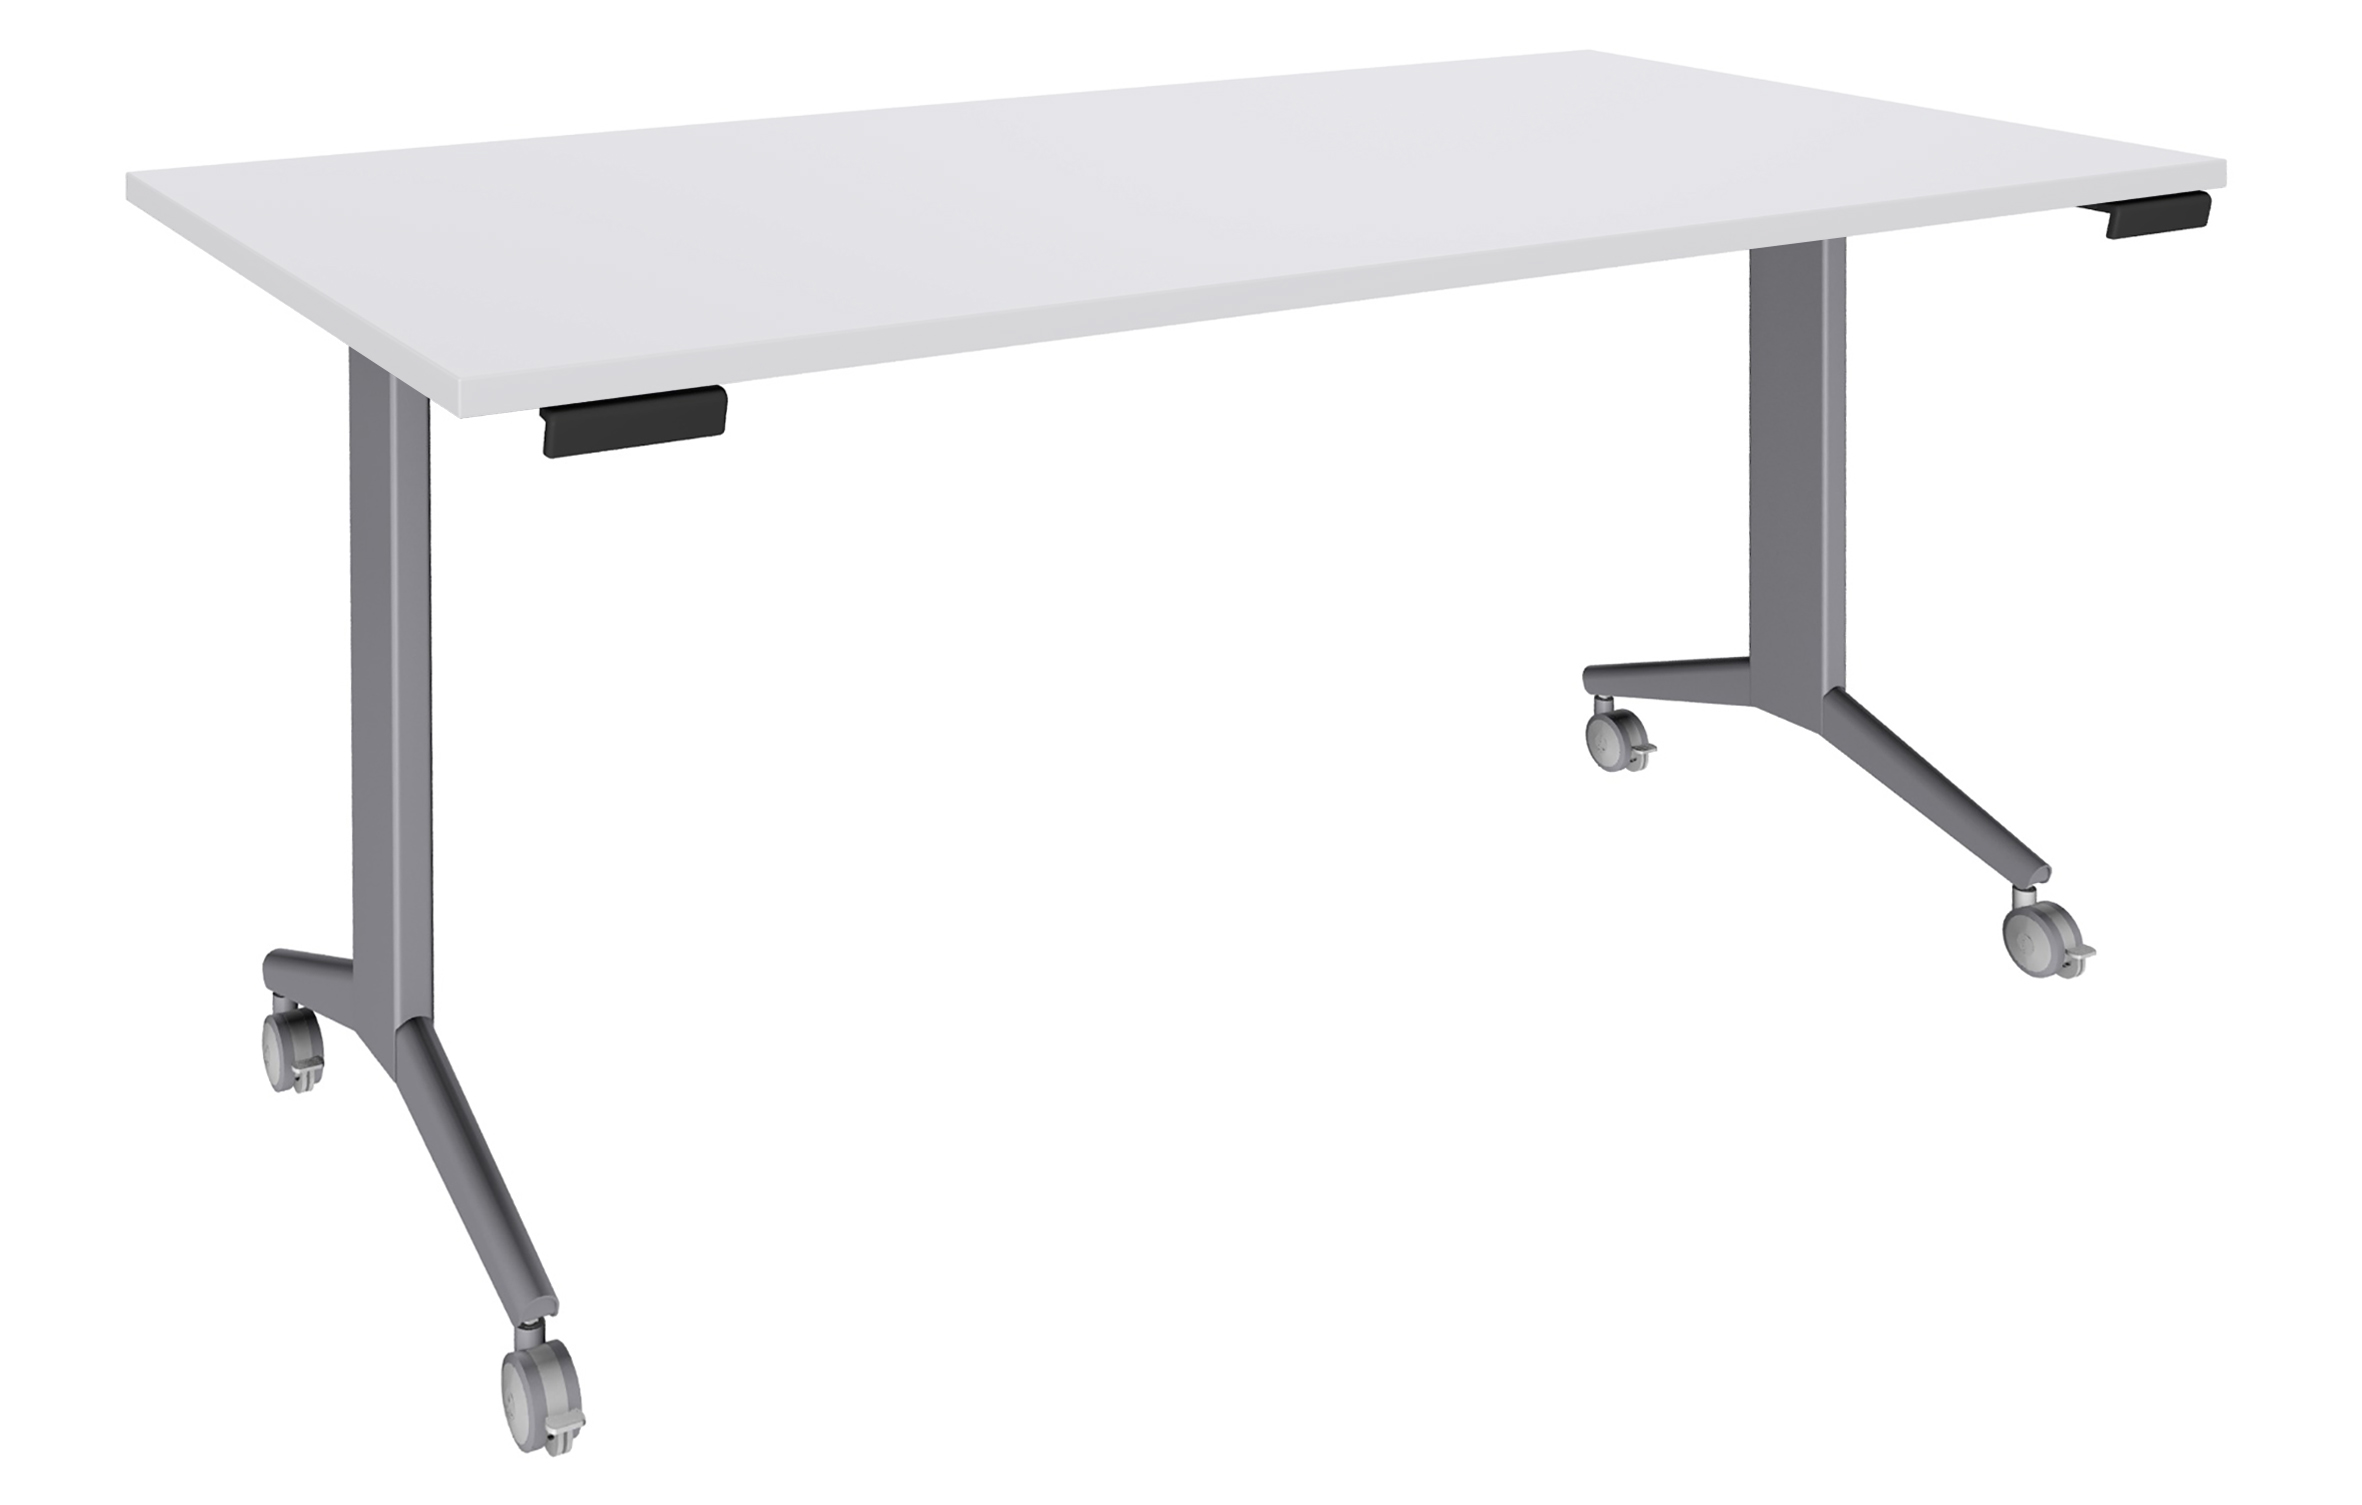 Table de réunion abattantes - L160 x P80 cm - pied alu - plateau blanc perle